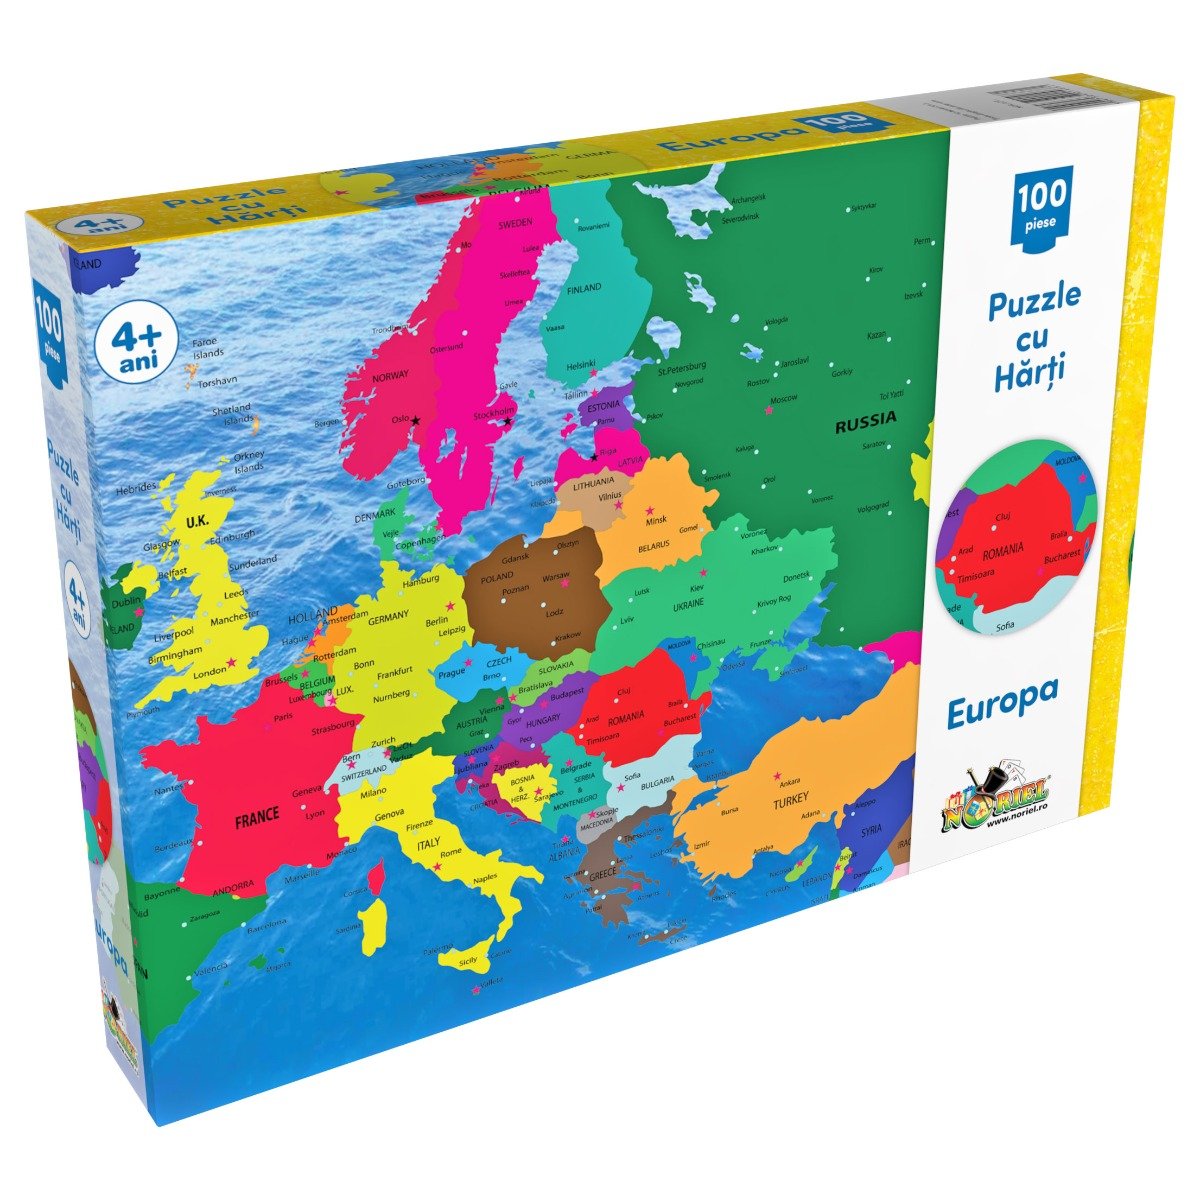 Puzzle Noriel cu harti 100 de piese – Harta Europei 100